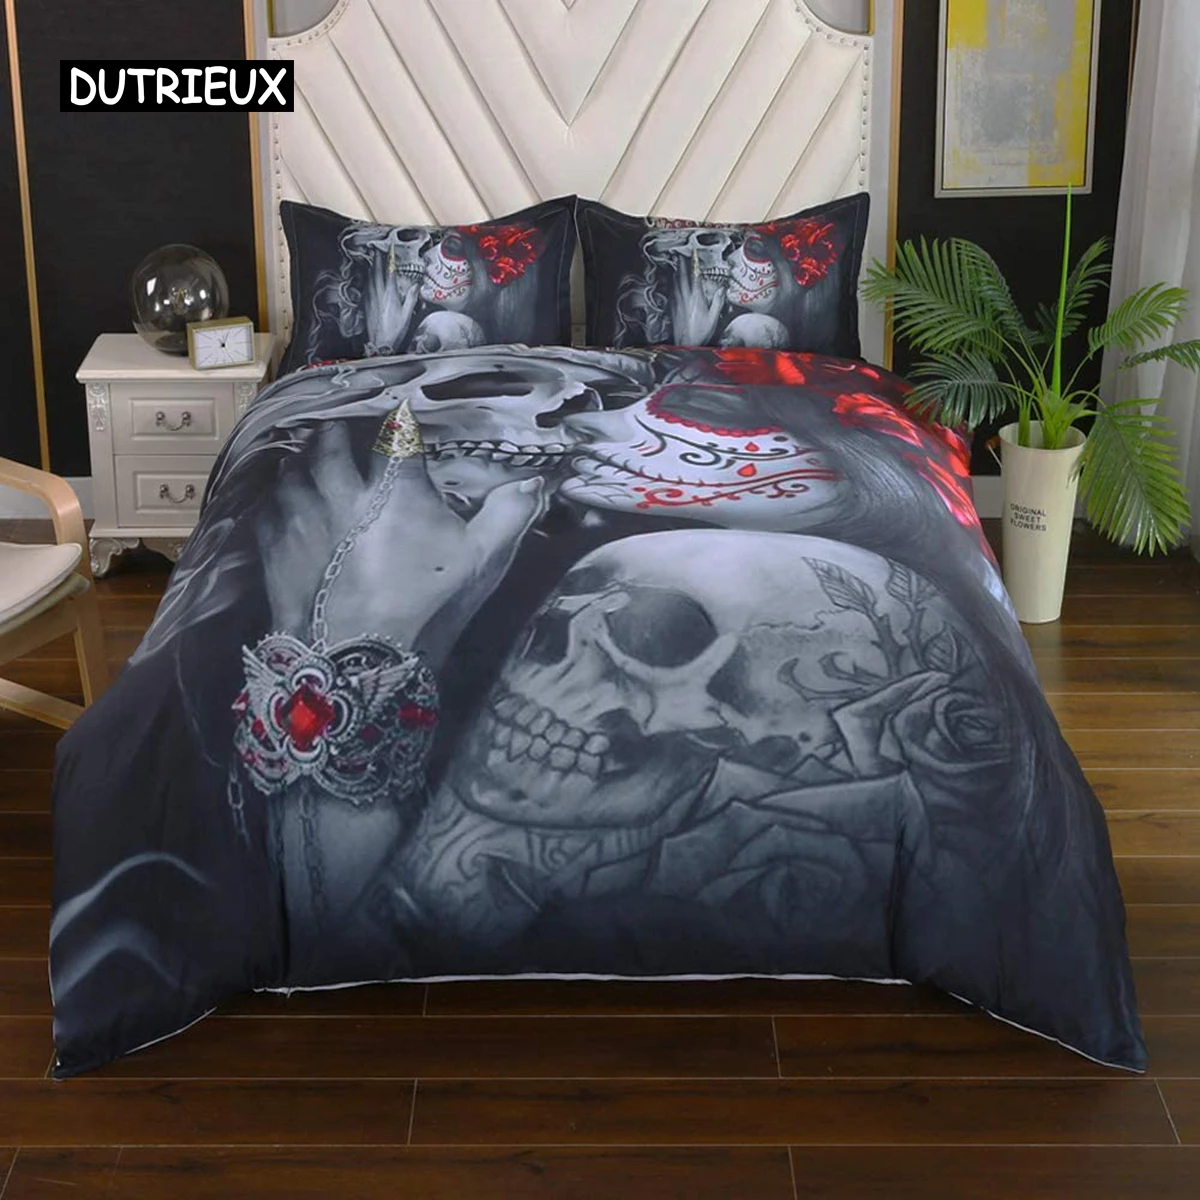 

Bedding Duvet Cover Sets,3D Dead Sugar Skull Girl Kissing Skull Home Bedding Set.Included: Duvet Cover,Pillowcase